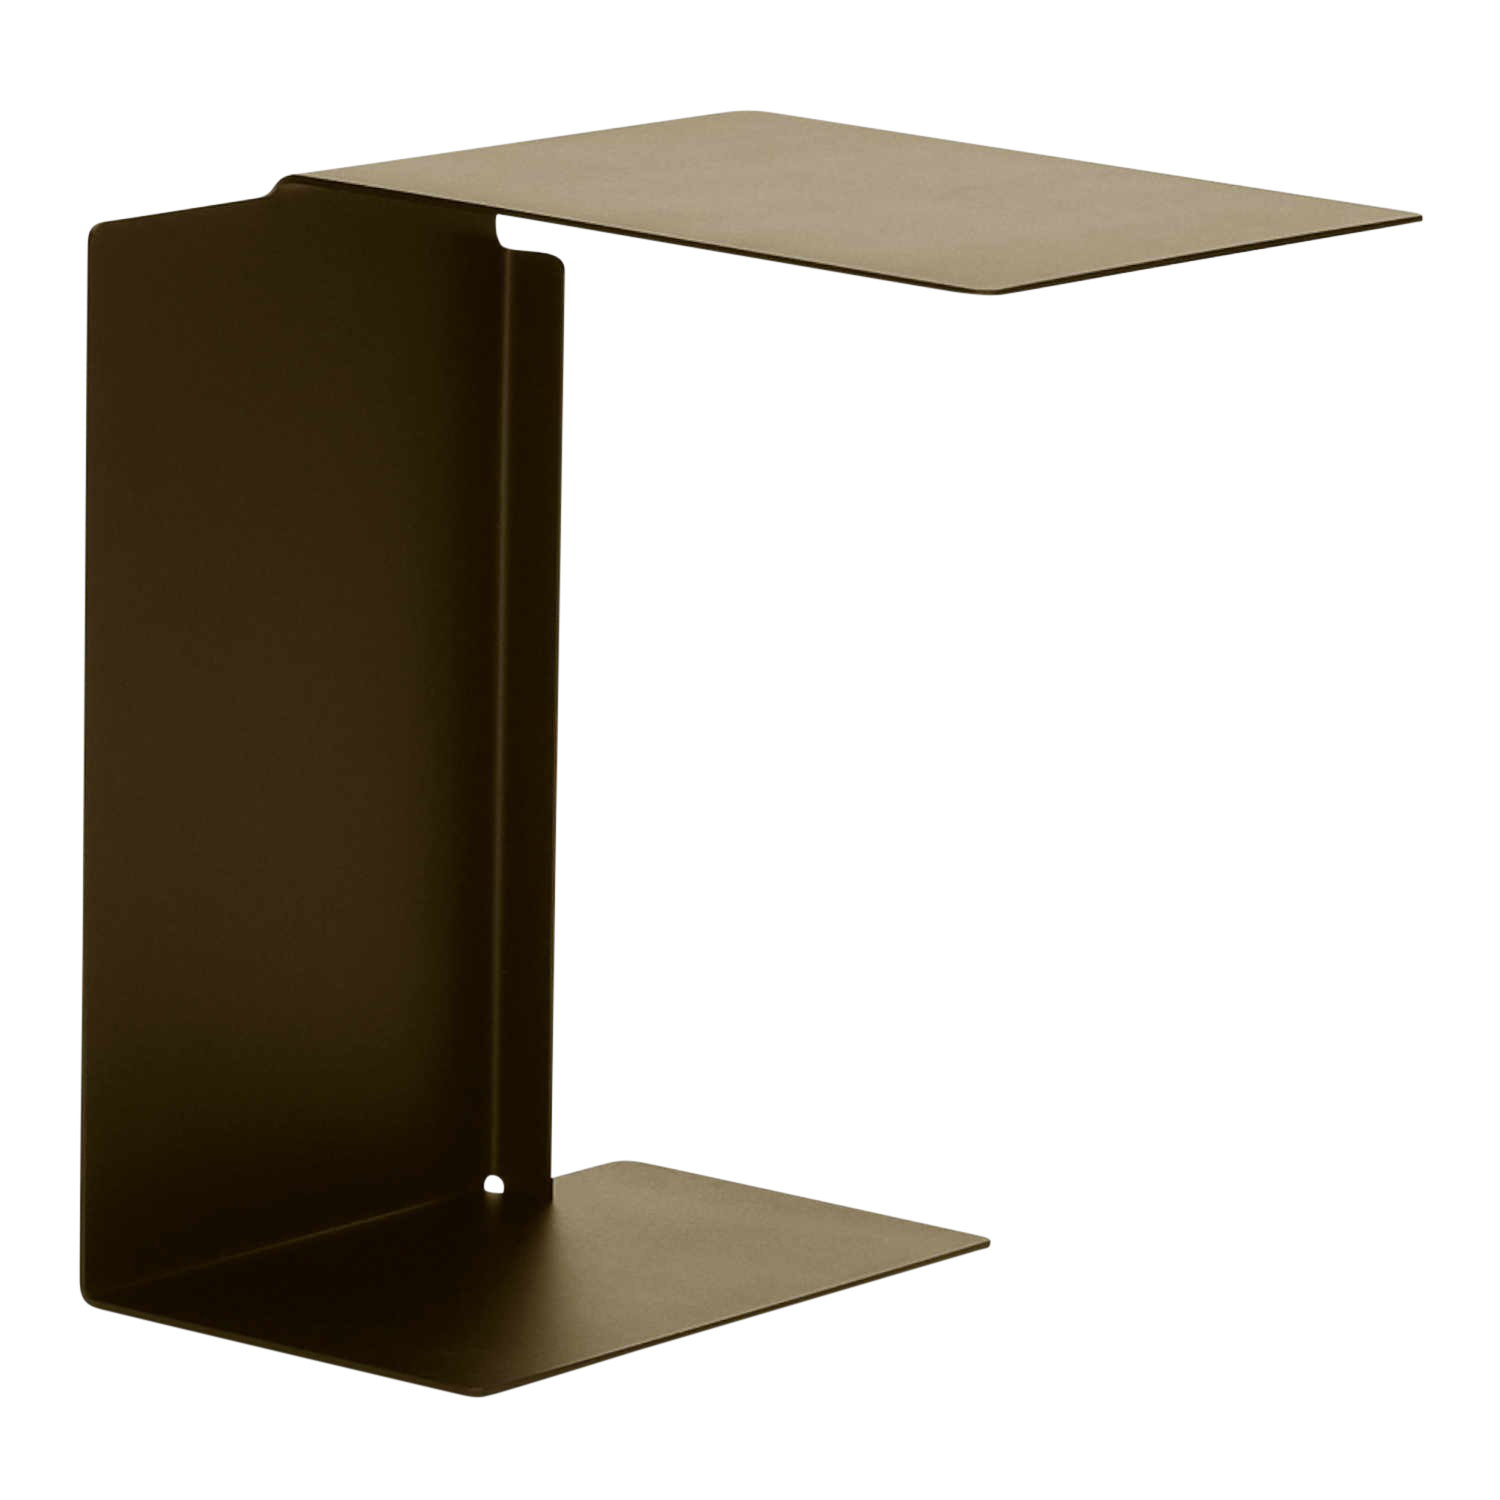 Diana B Side Table Beistelltisch, Farbe basaltgrau ral 7012 von ClassiCon